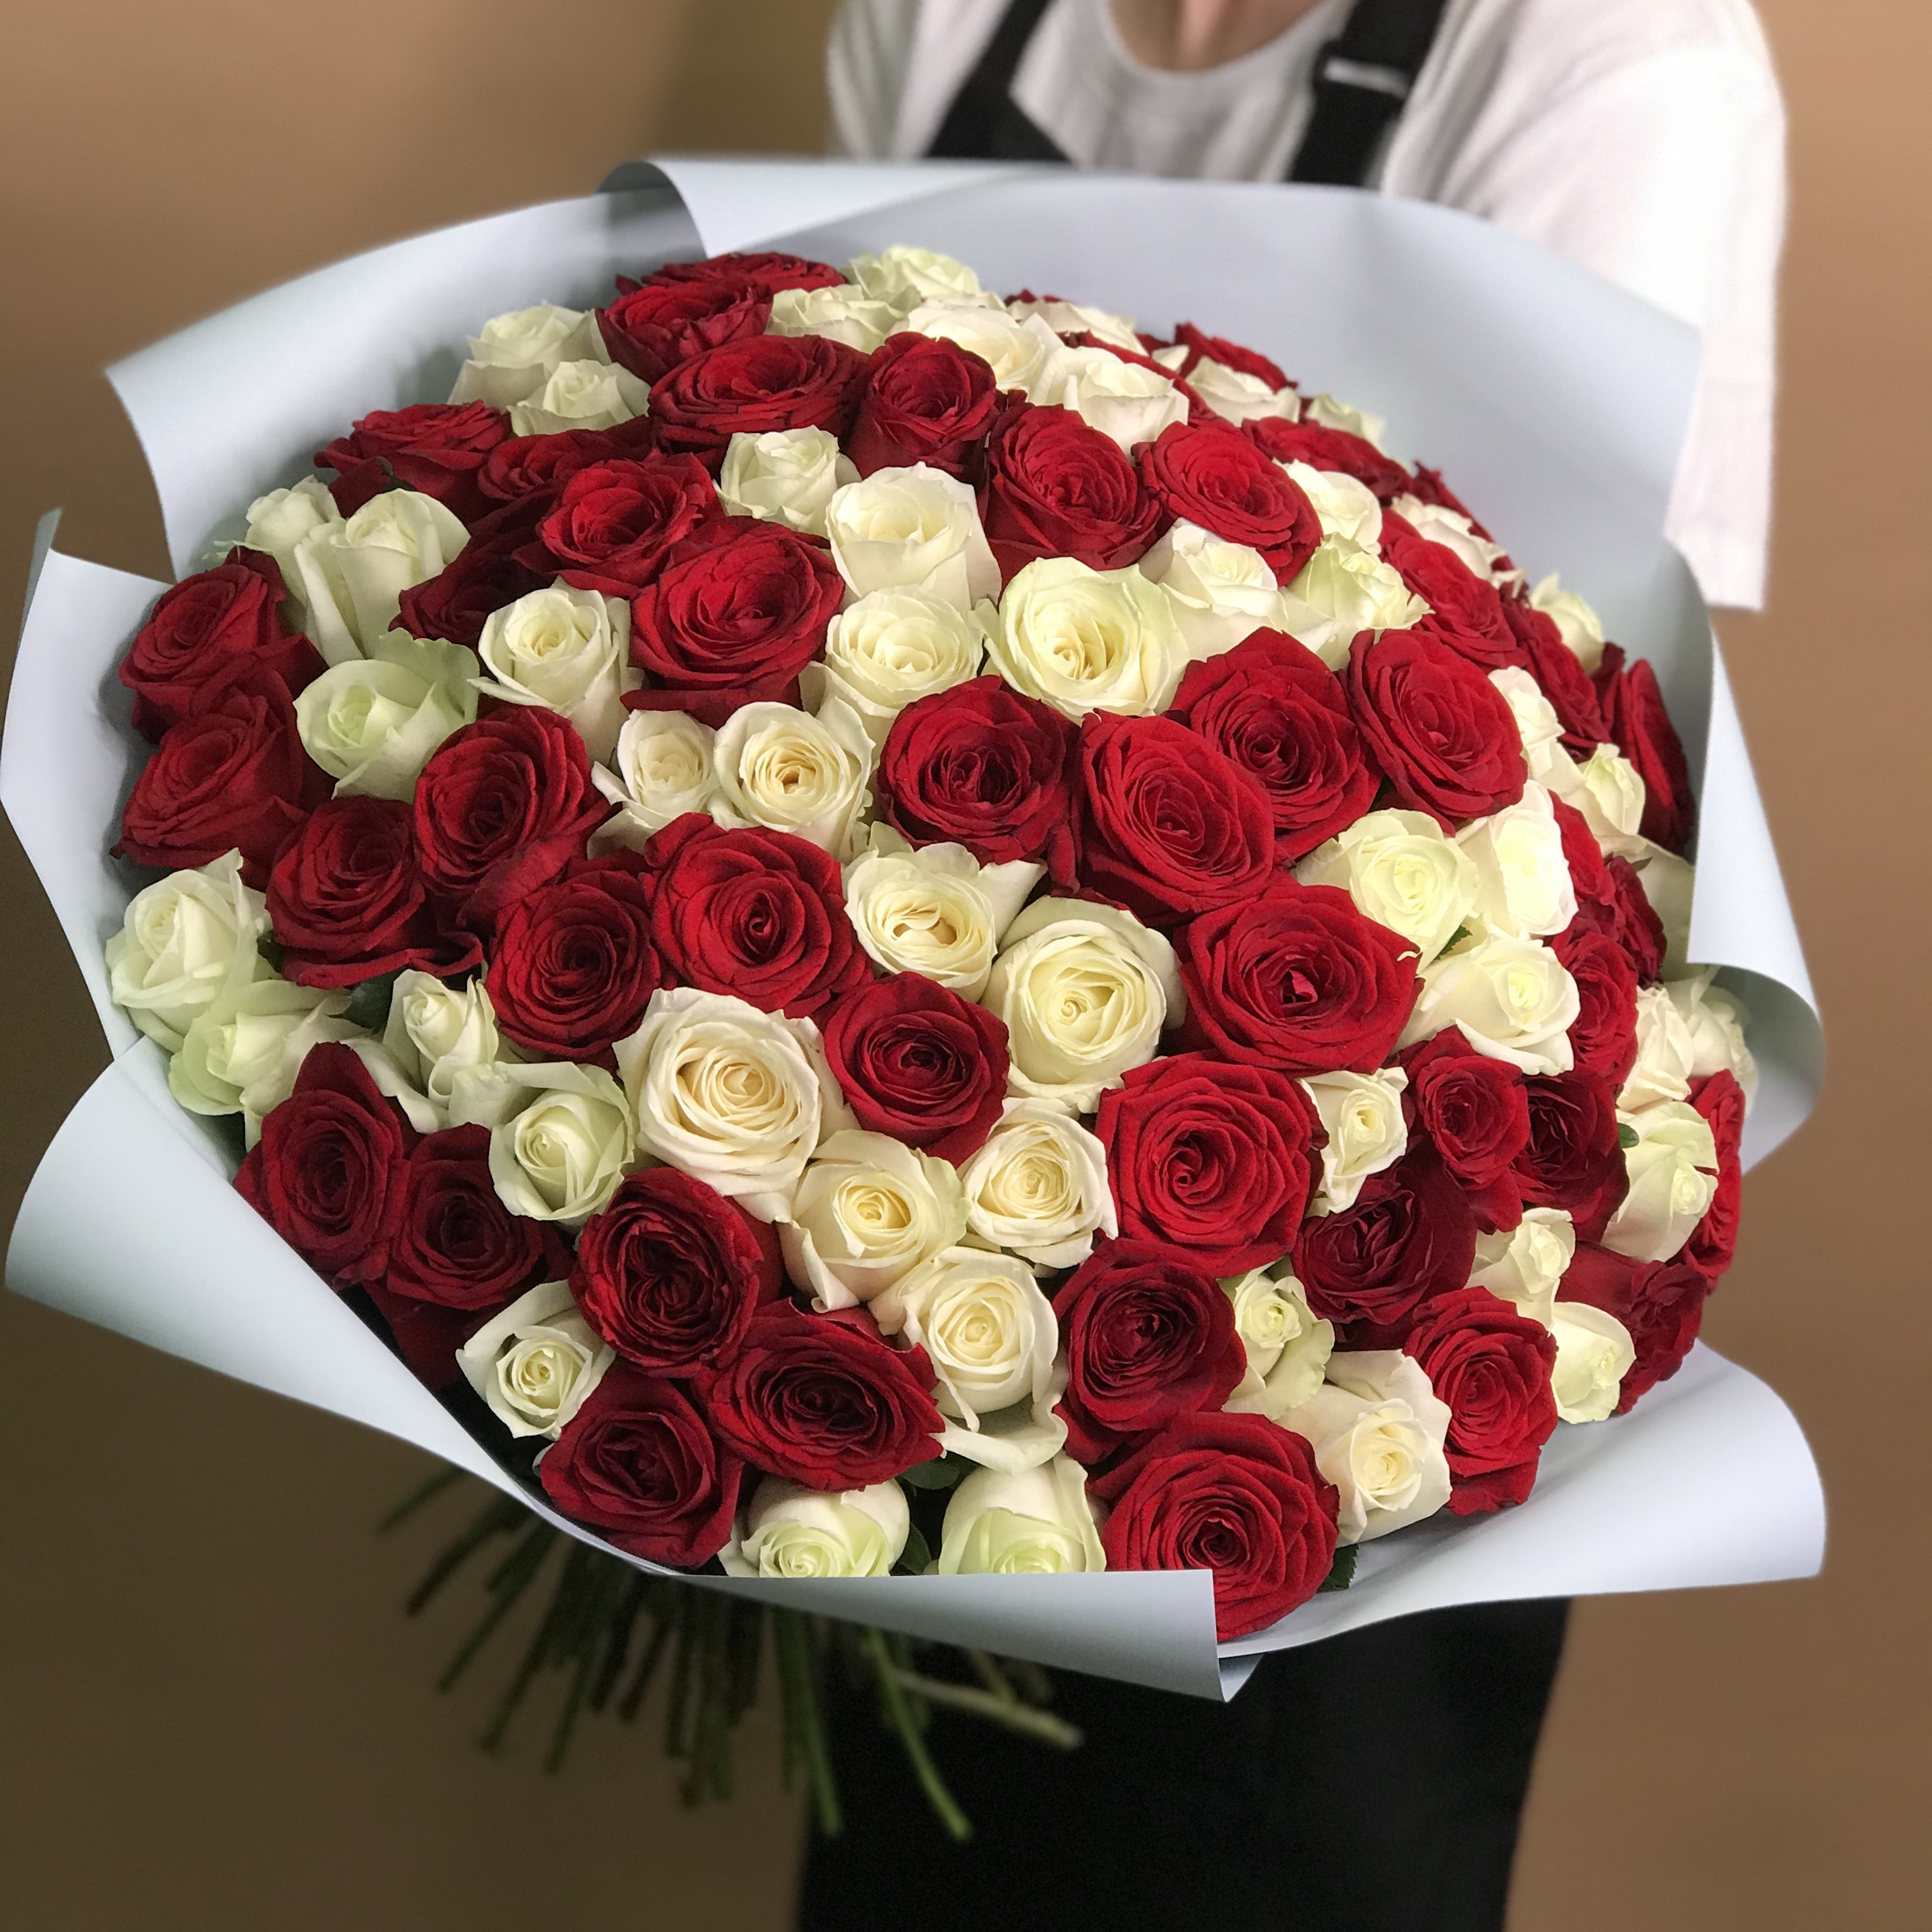 Букет из красных и белых роз 101 шт. (50 см) букет из красных и белых роз 101 шт 50 см